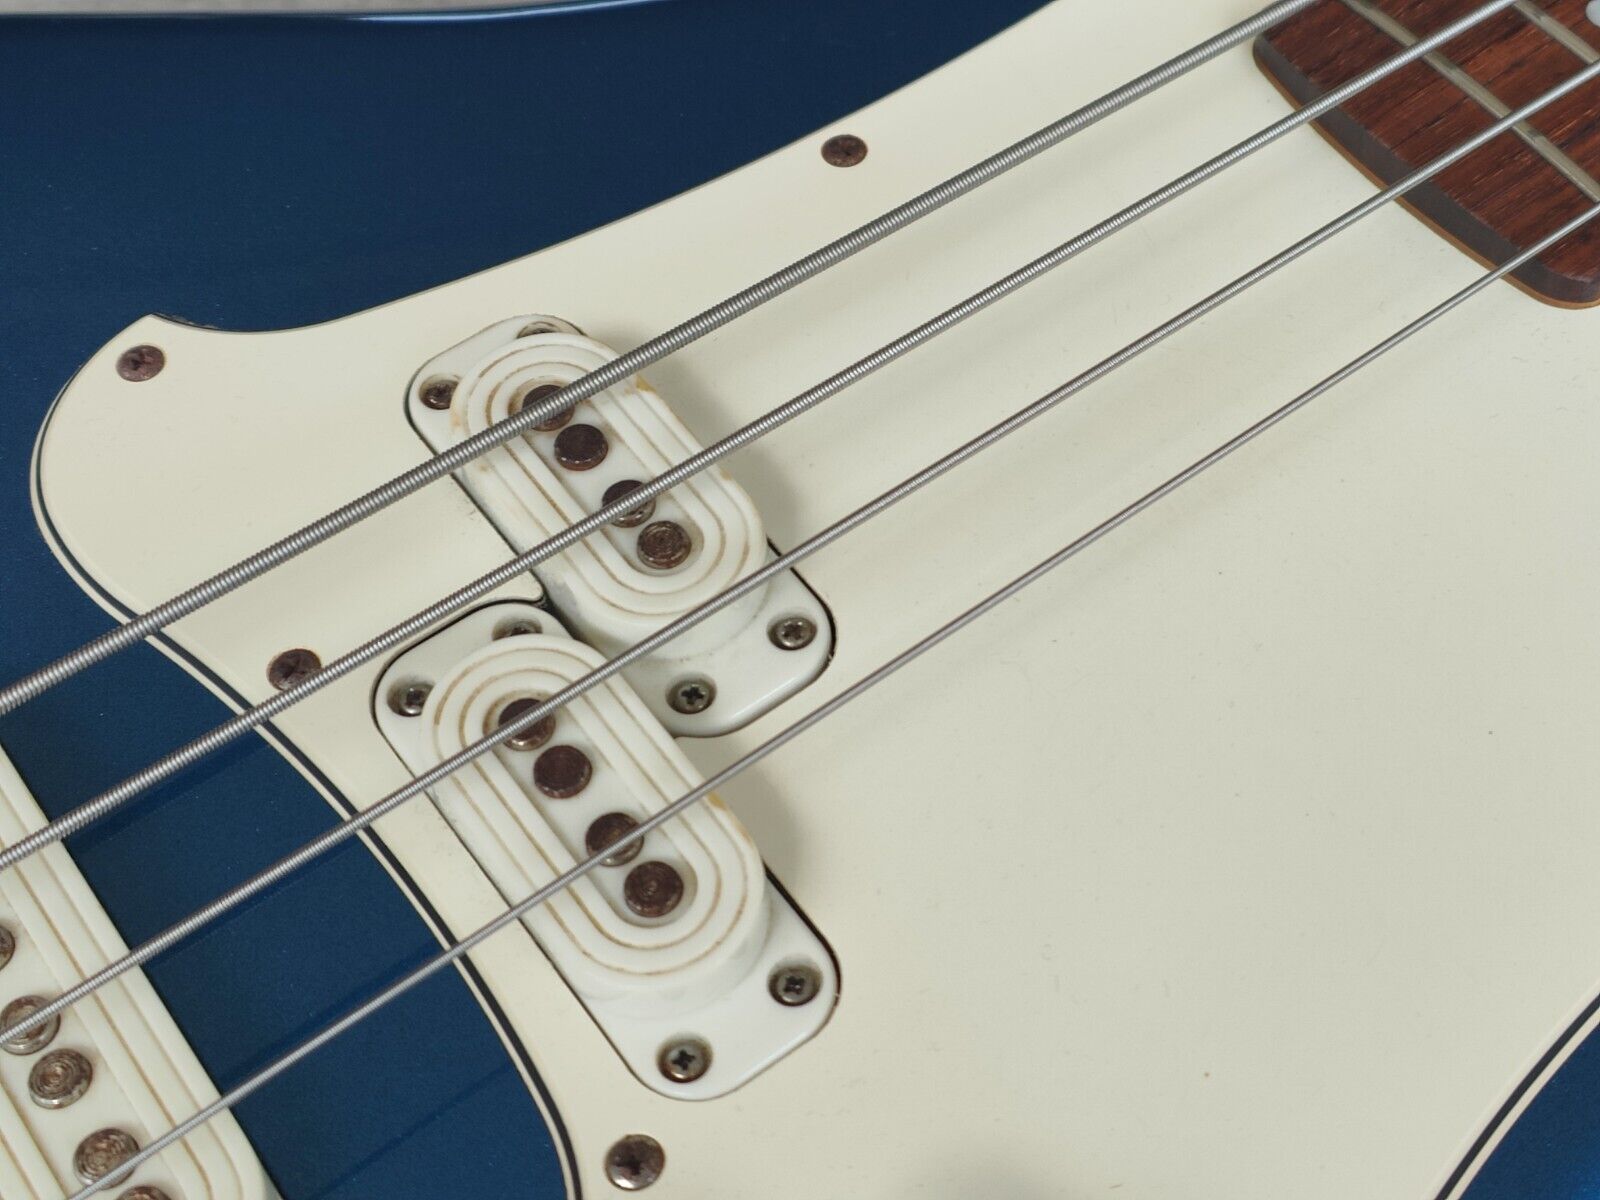 2000's Yamaha SBV-550 Samurai Bass (Metallic Blue)